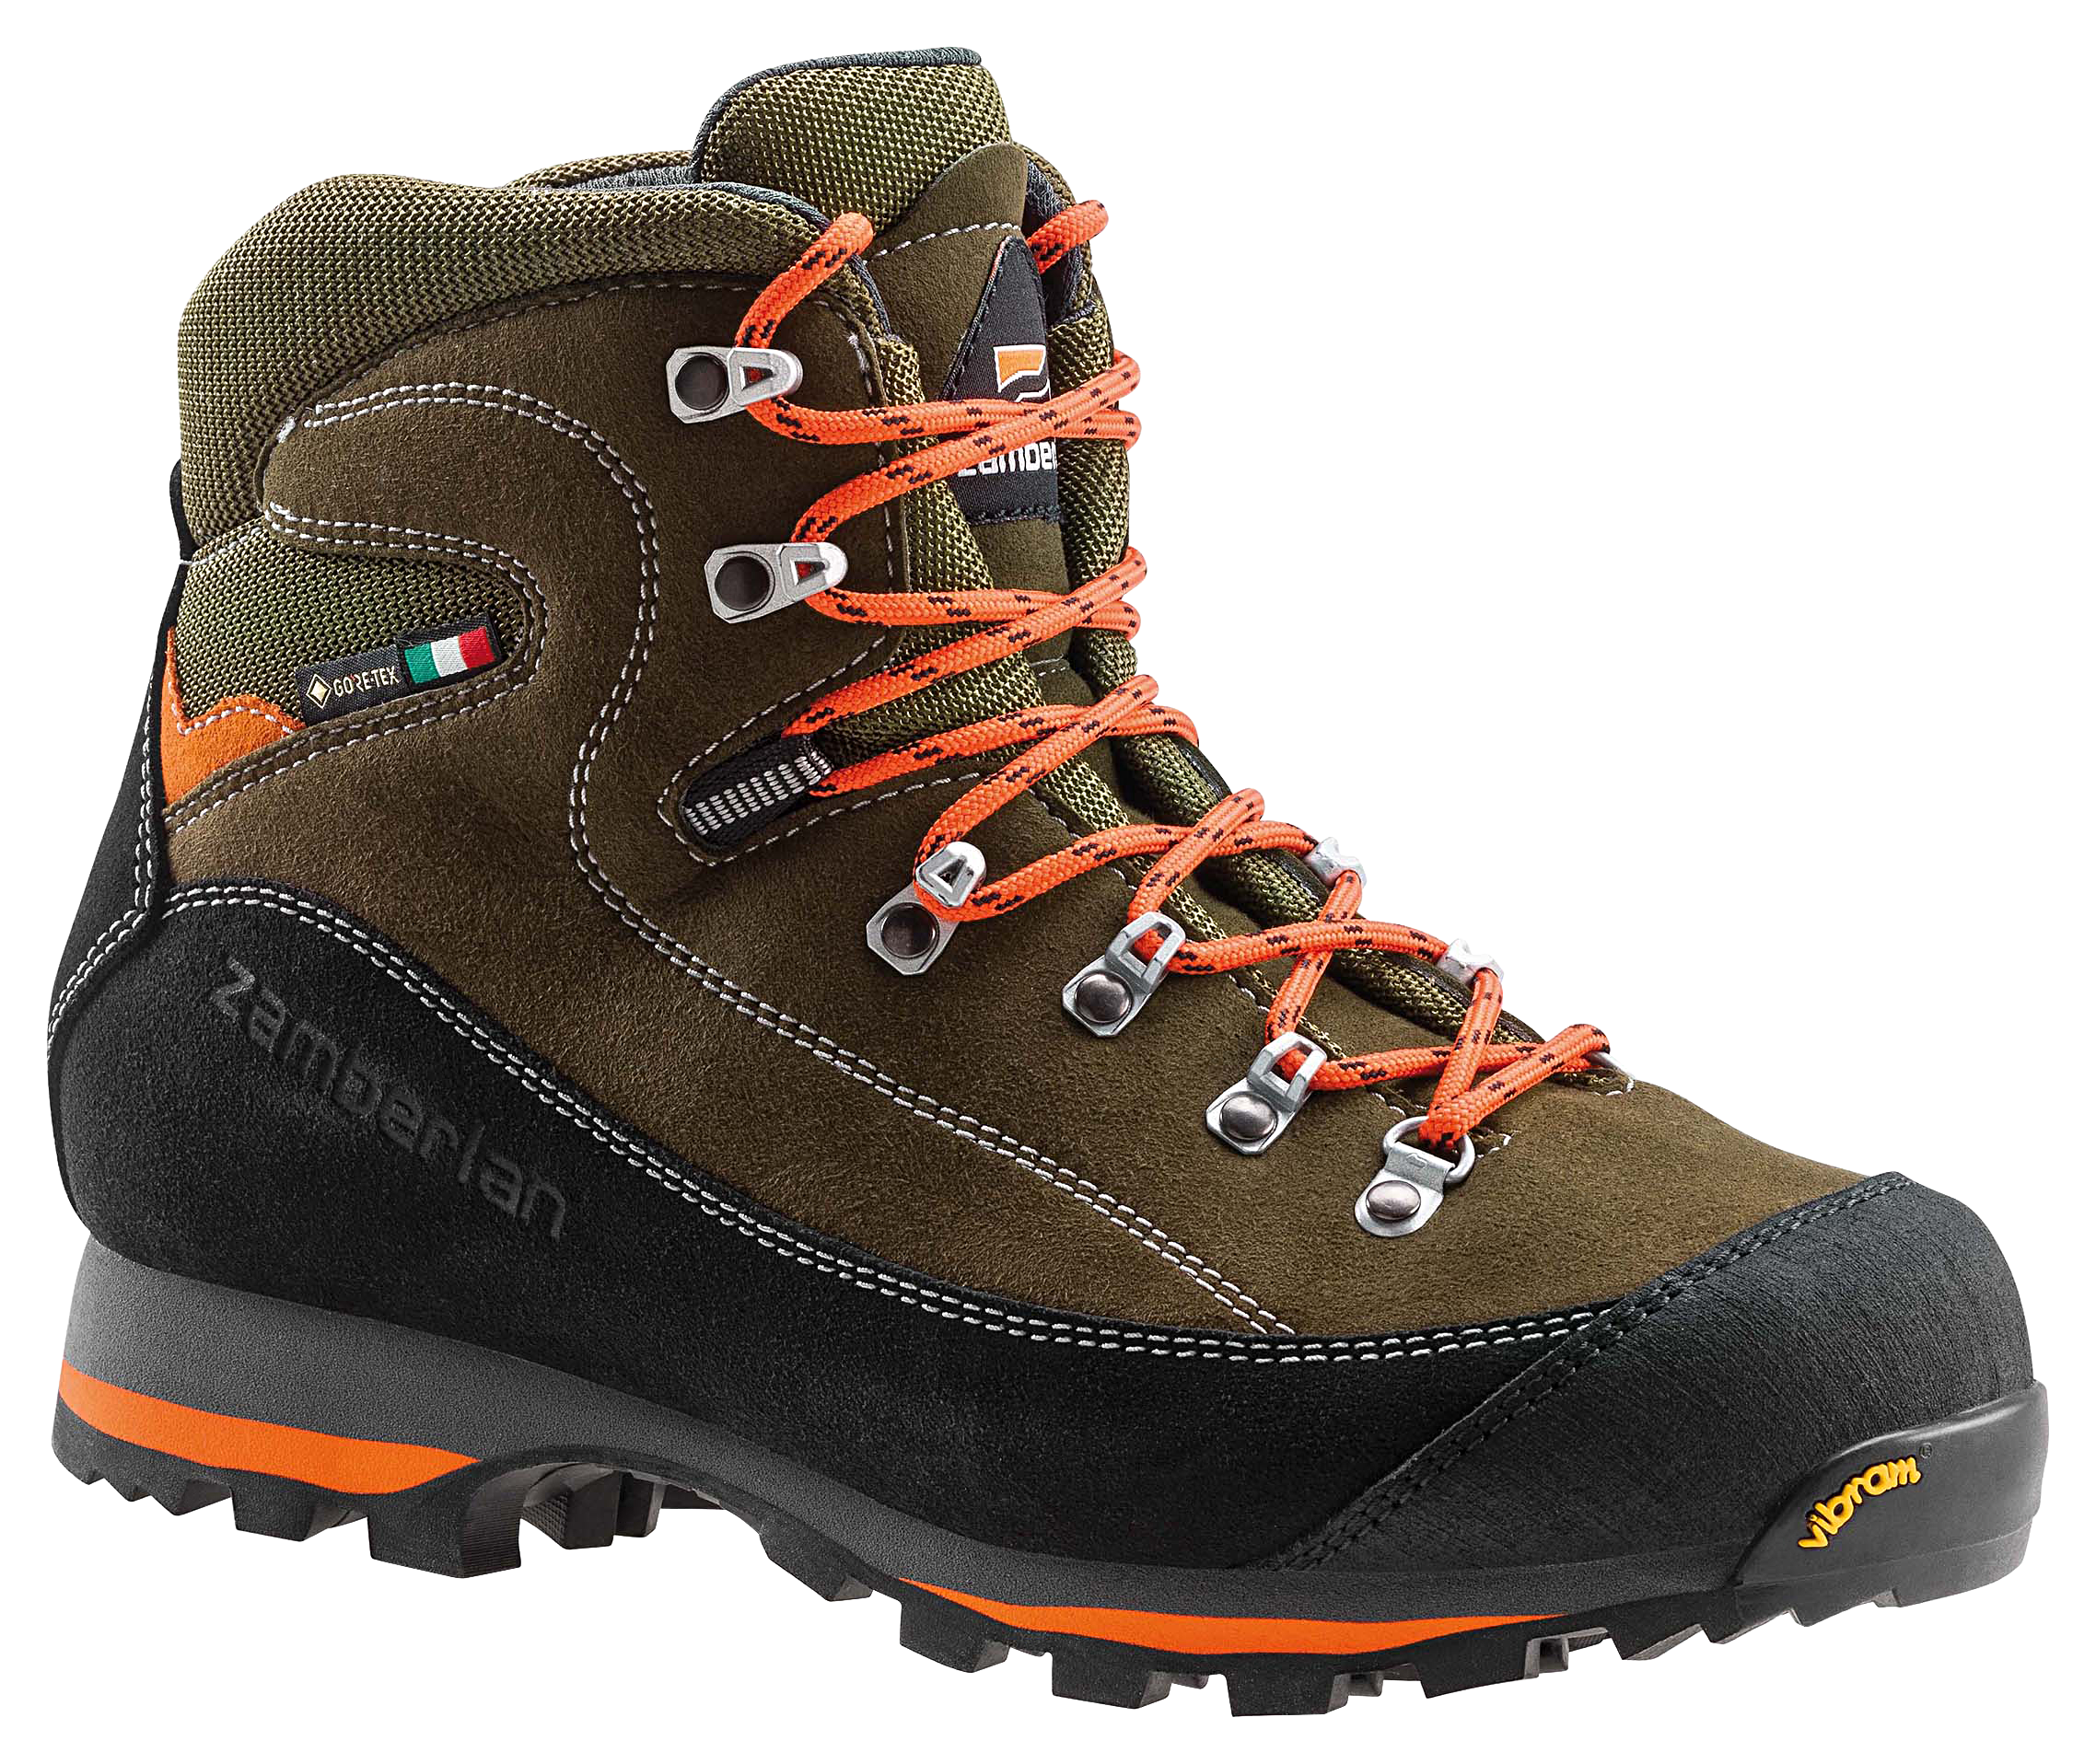 Zamberlan 700 Sierra GTX Waterproof Hunting Boots for Men - Forest - 10.5M